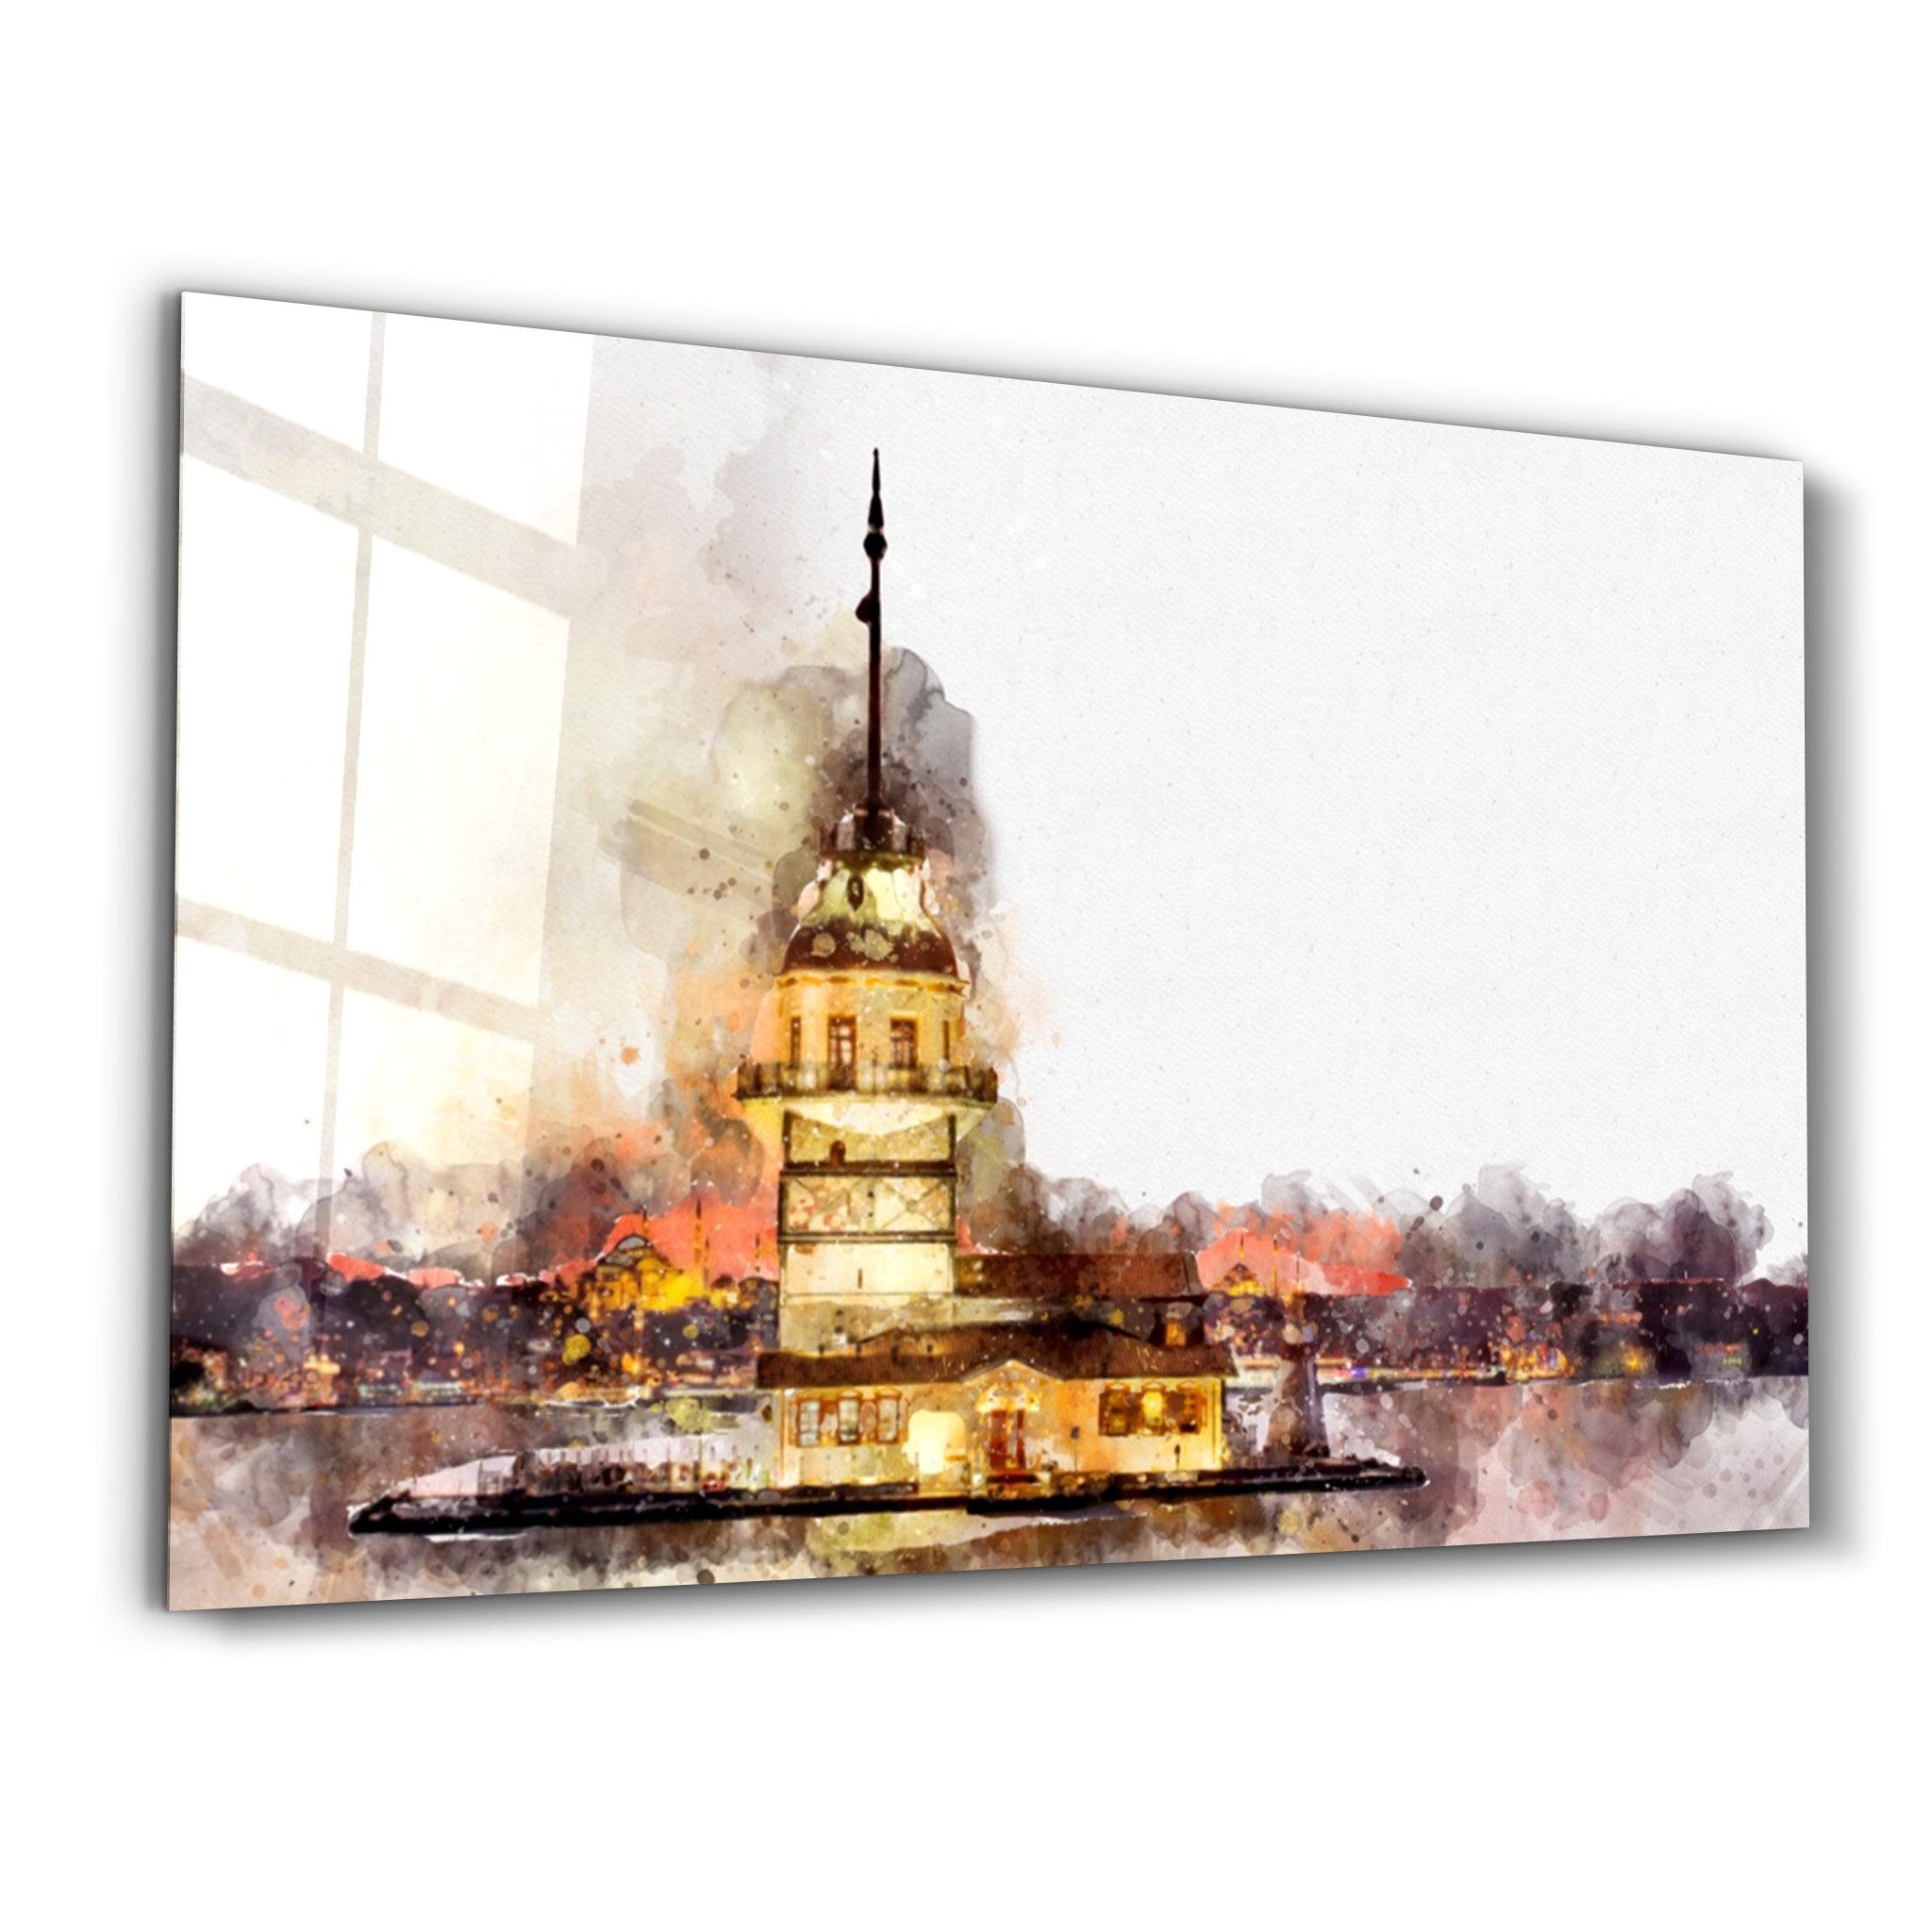 Maiden's Tower | Glass Wall Art - ArtDesigna Glass Printing Wall Art